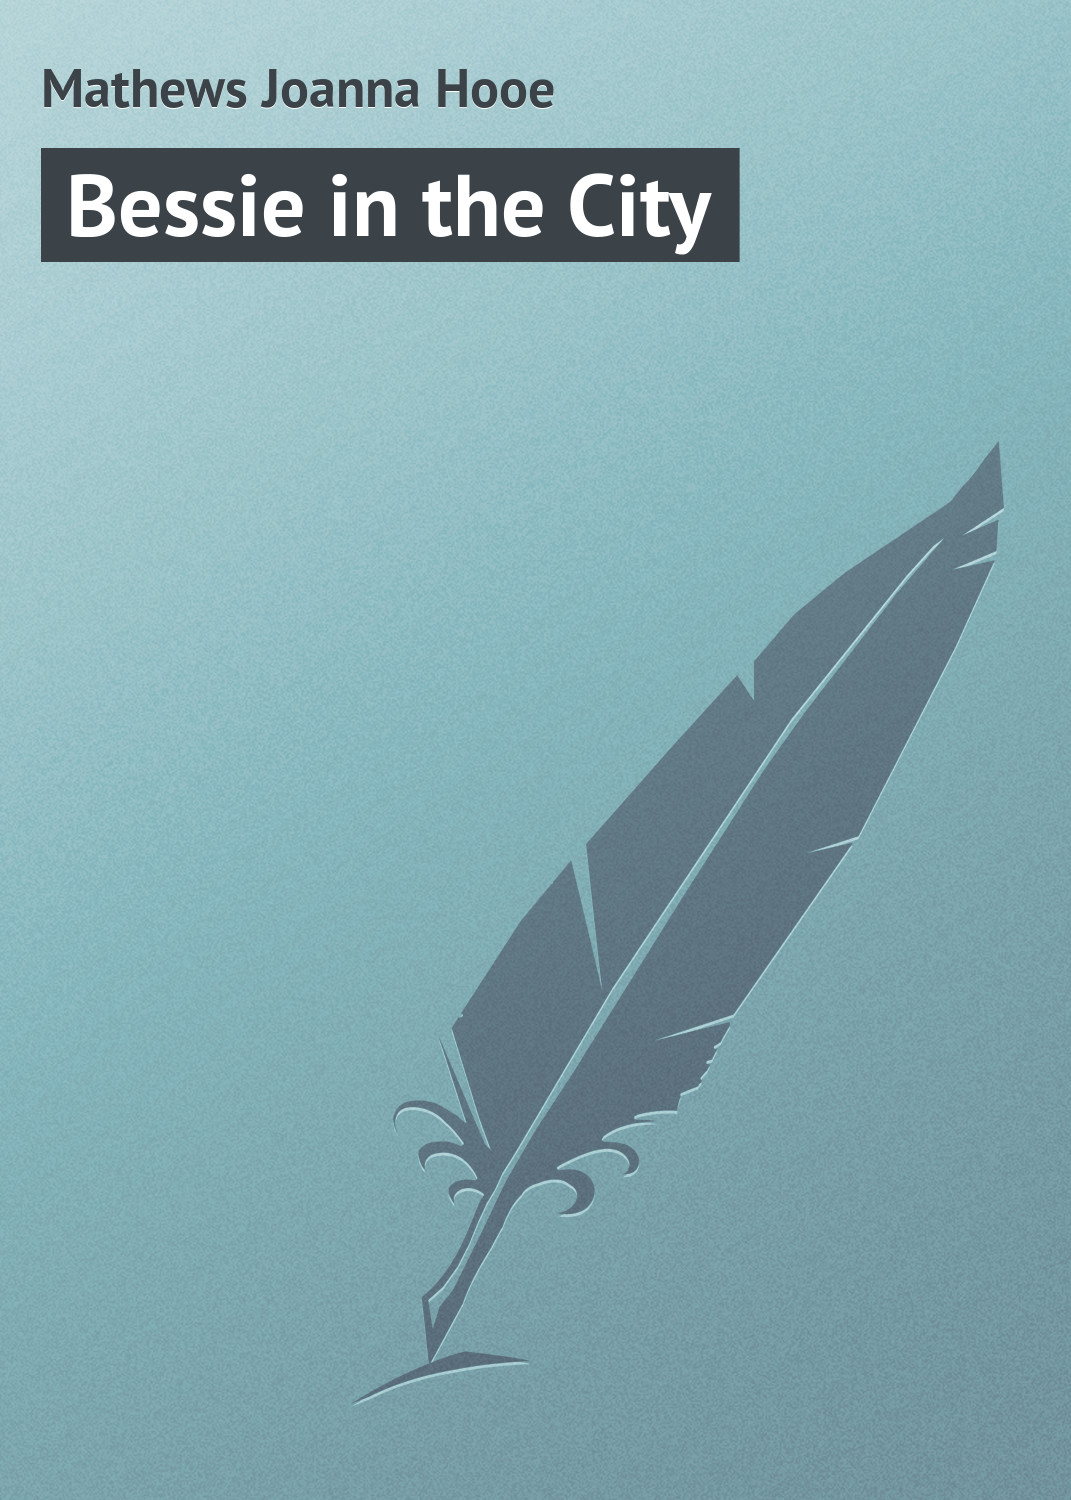 Книга Bessie in the City из серии , созданная Joanna Mathews, может относится к жанру Зарубежная классика. Стоимость электронной книги Bessie in the City с идентификатором 23164907 составляет 5.99 руб.